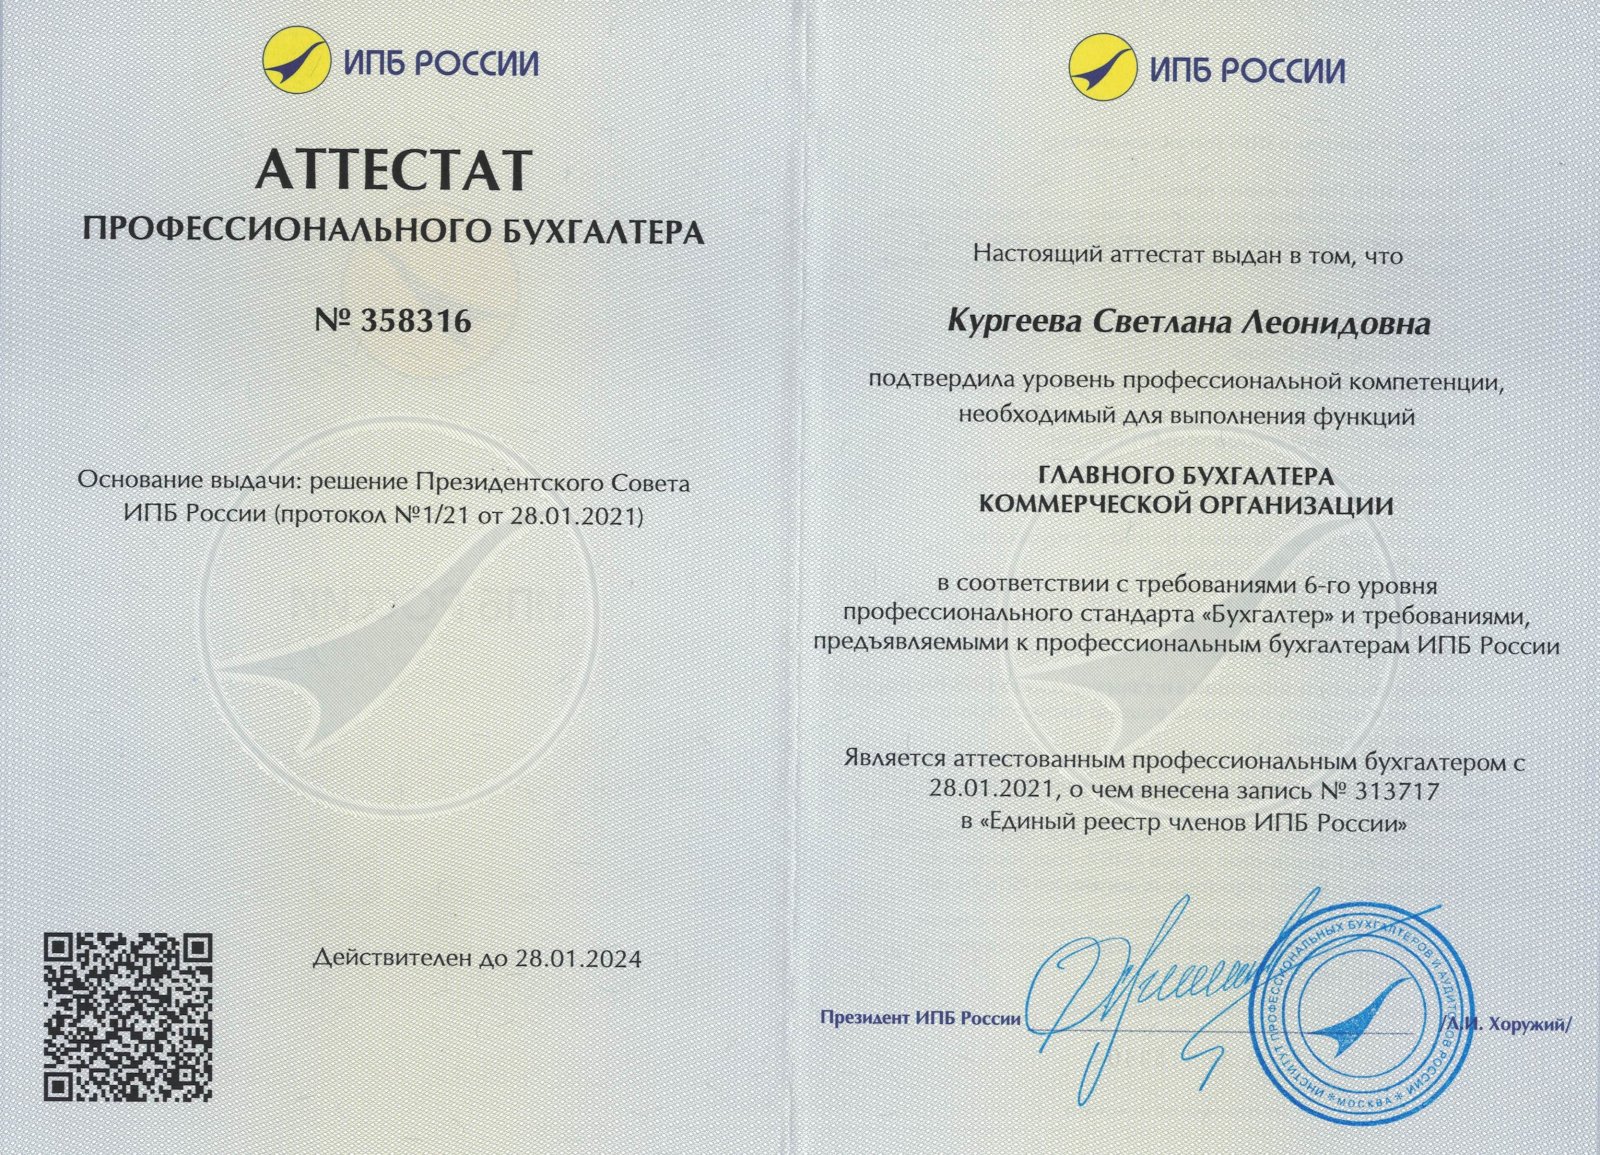 Сертификат партнера от Роял кредит банка